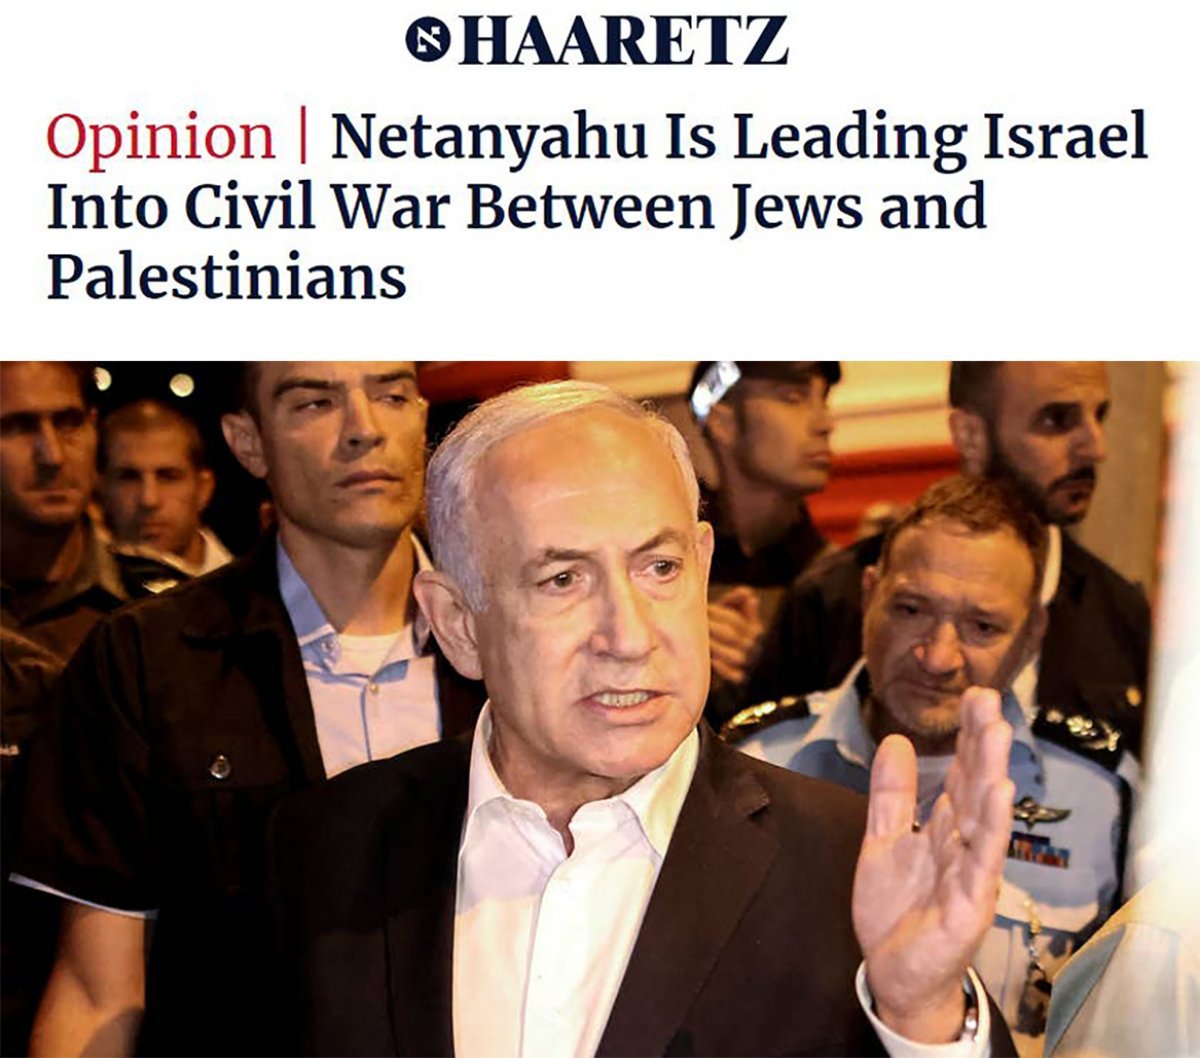 Haaretz: Netanyahu is dragging Israel into civil war #4